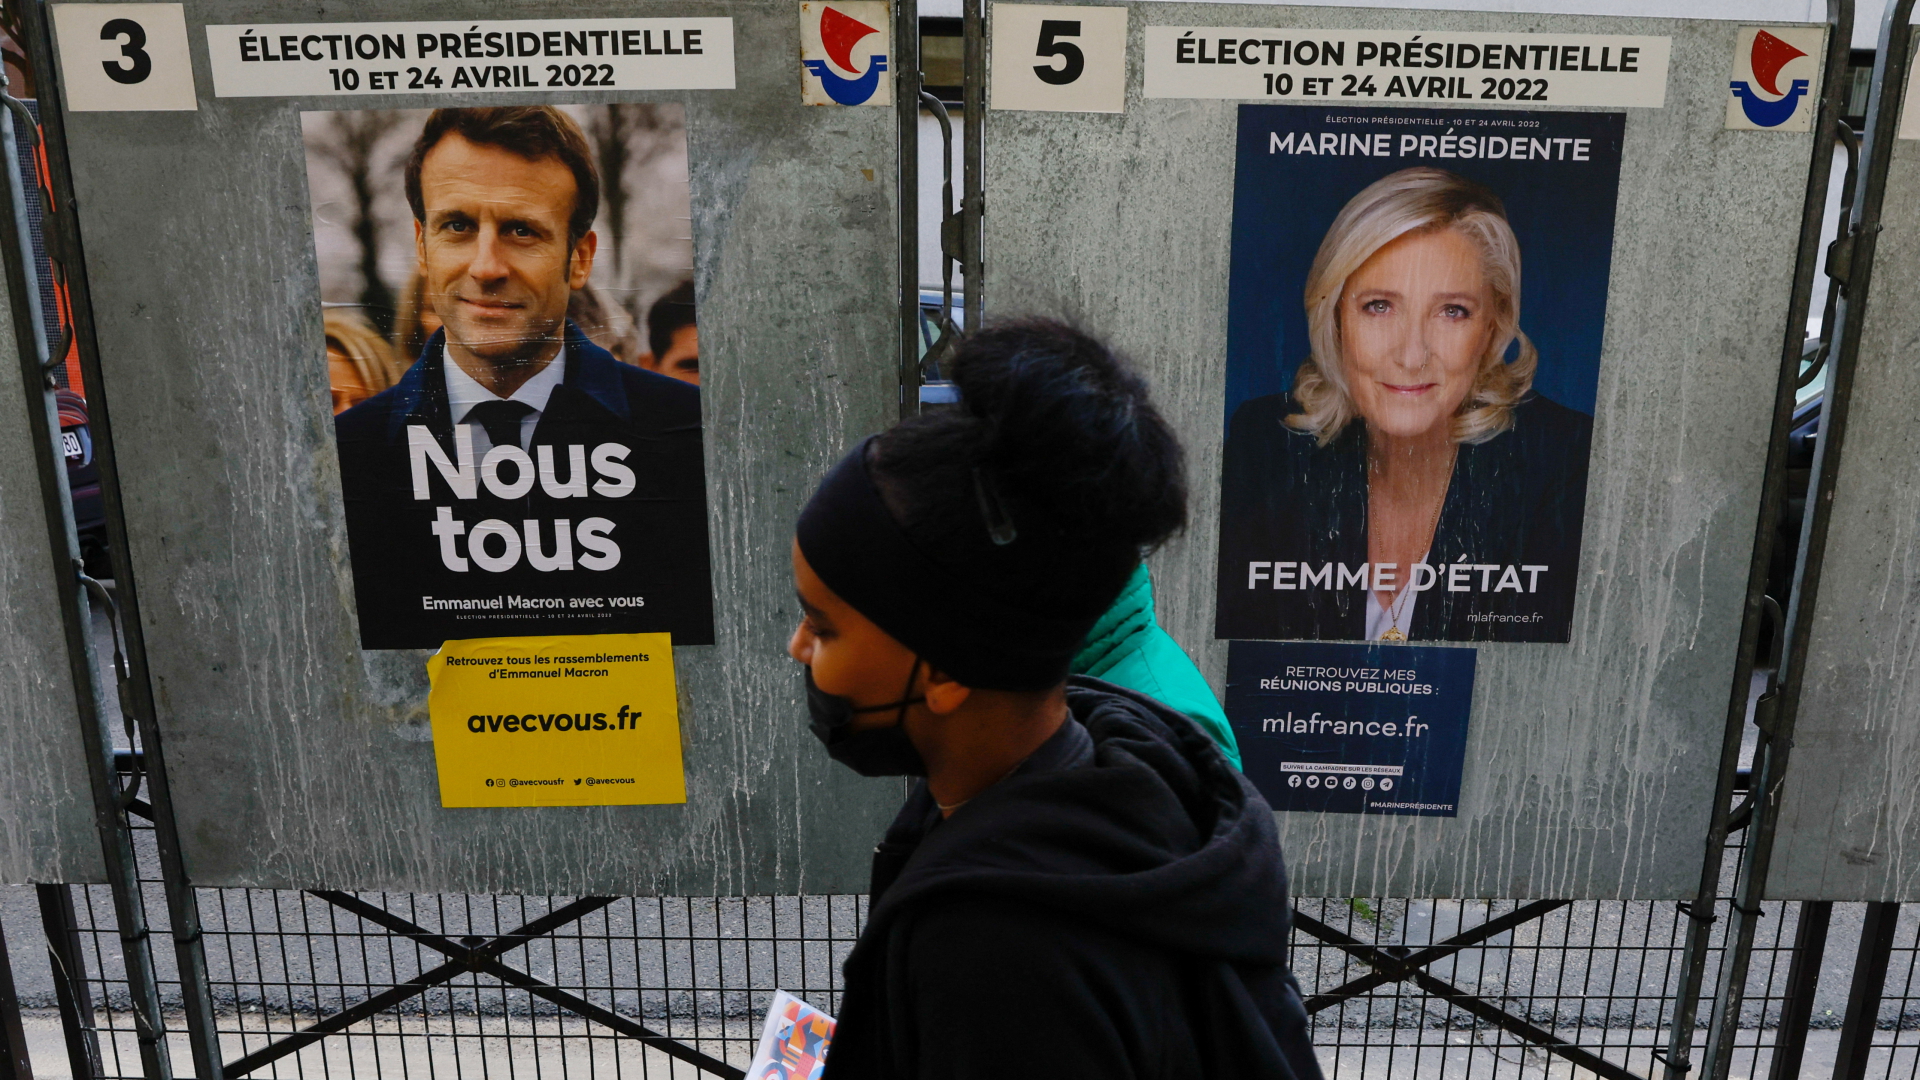 Wahlplakate von Macron und Le Pen im Wahlkampf | REUTERS